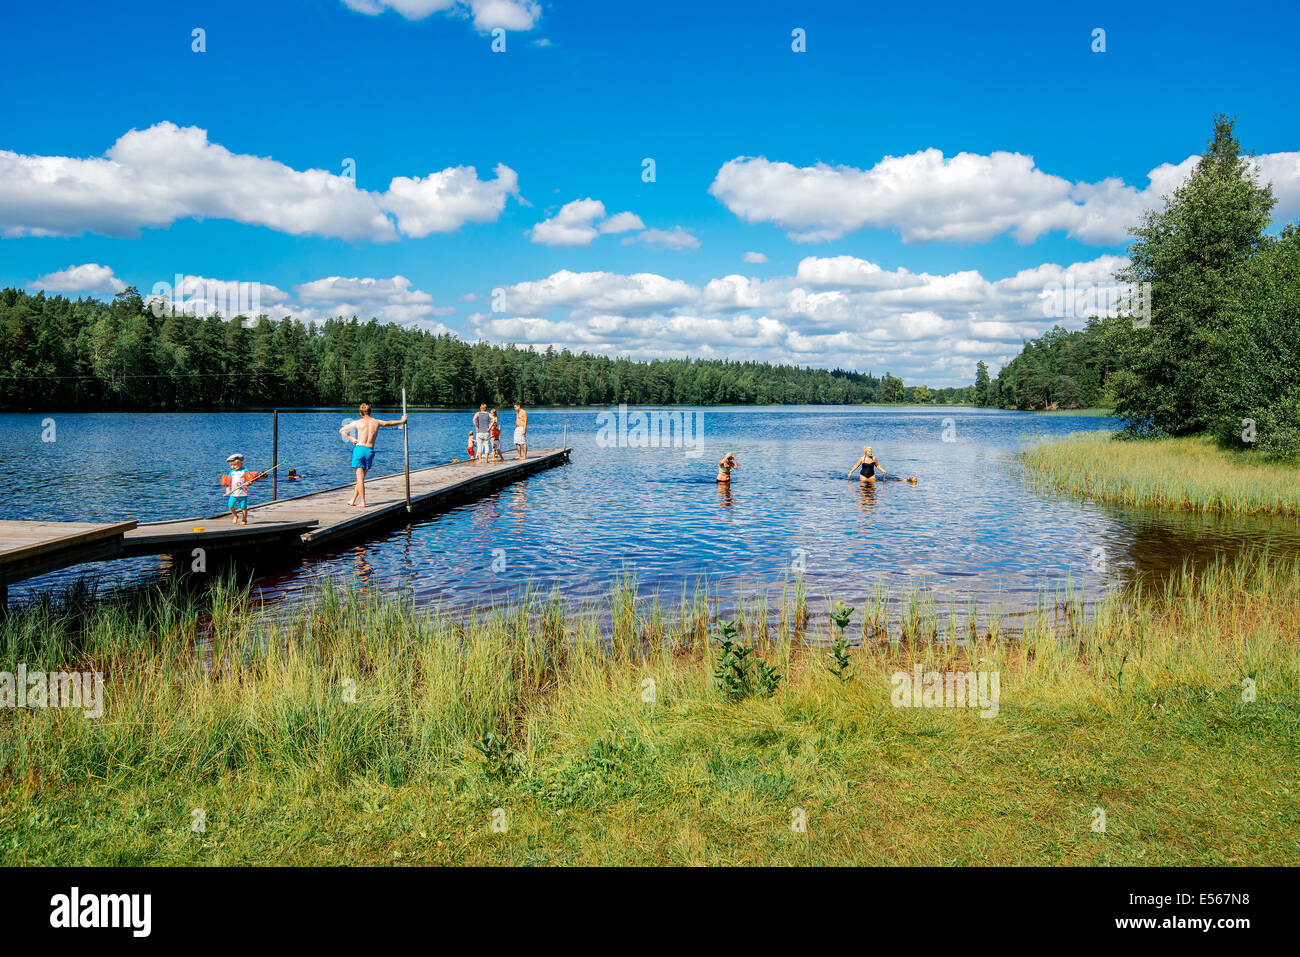 L'été en Suède - les personnes bénéficiant d'une journée ensoleillée au bord d'un lac Banque D'Images